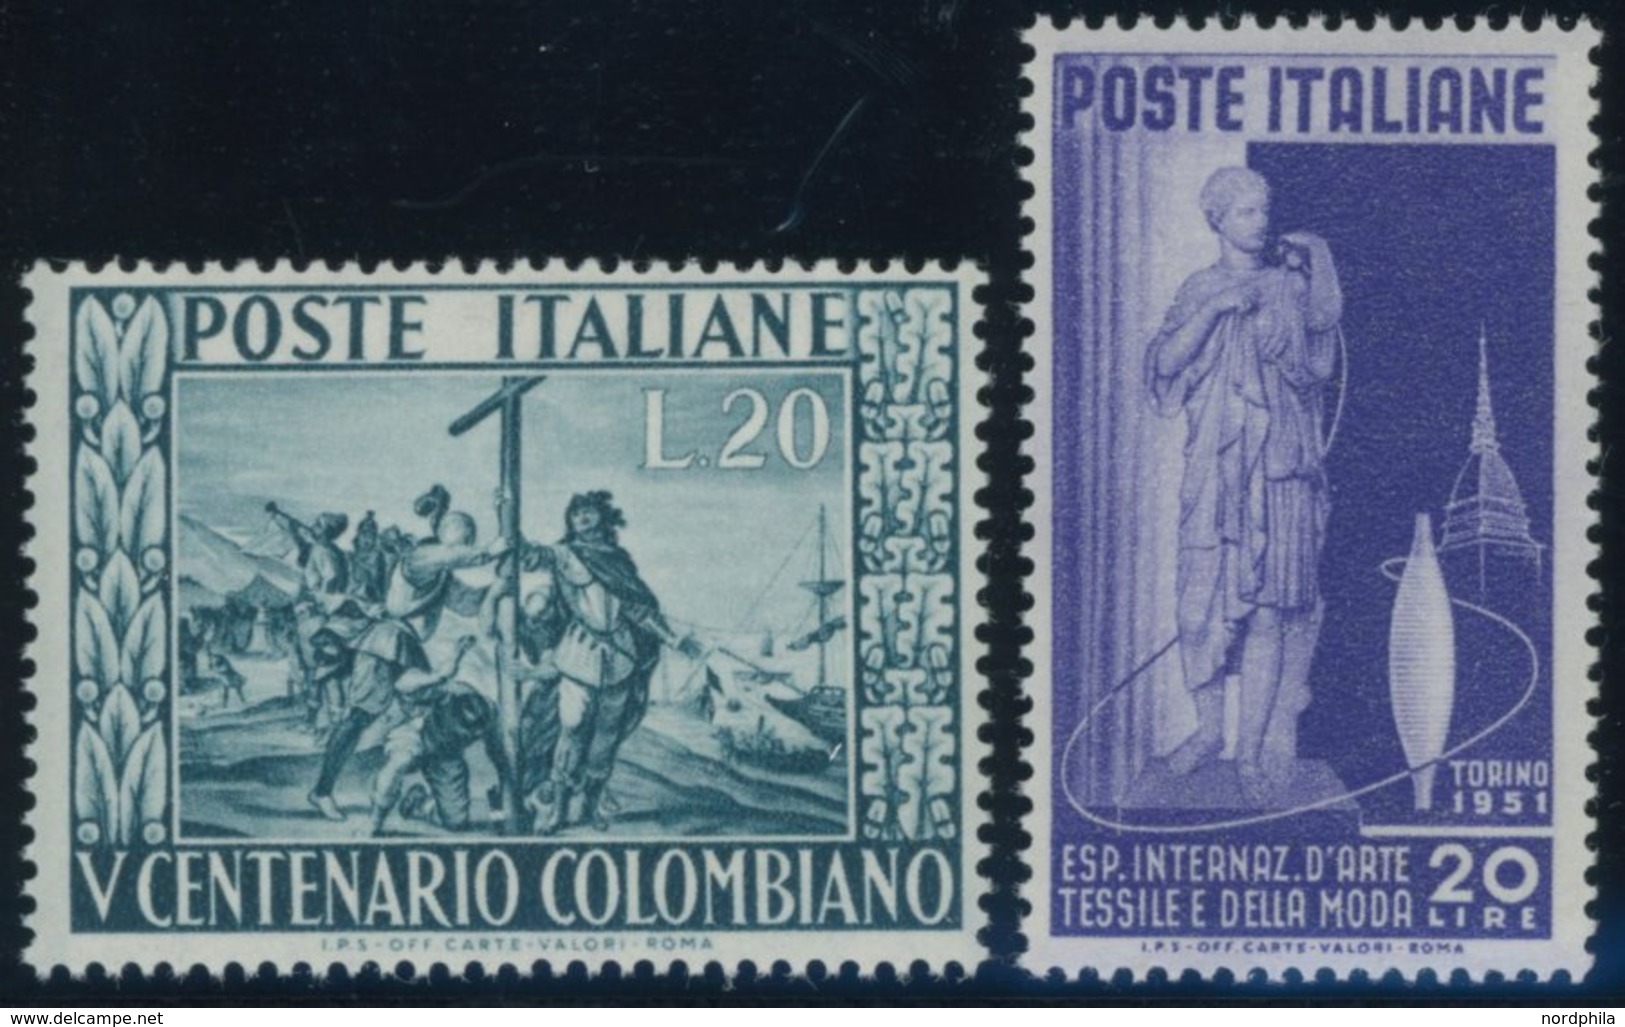 ITALIEN 832/3 **, 1951, Textilausstellung Und Kolumbus, Postfrisch, 2 Prachtwerte, Mi. 60.- - Non Classés